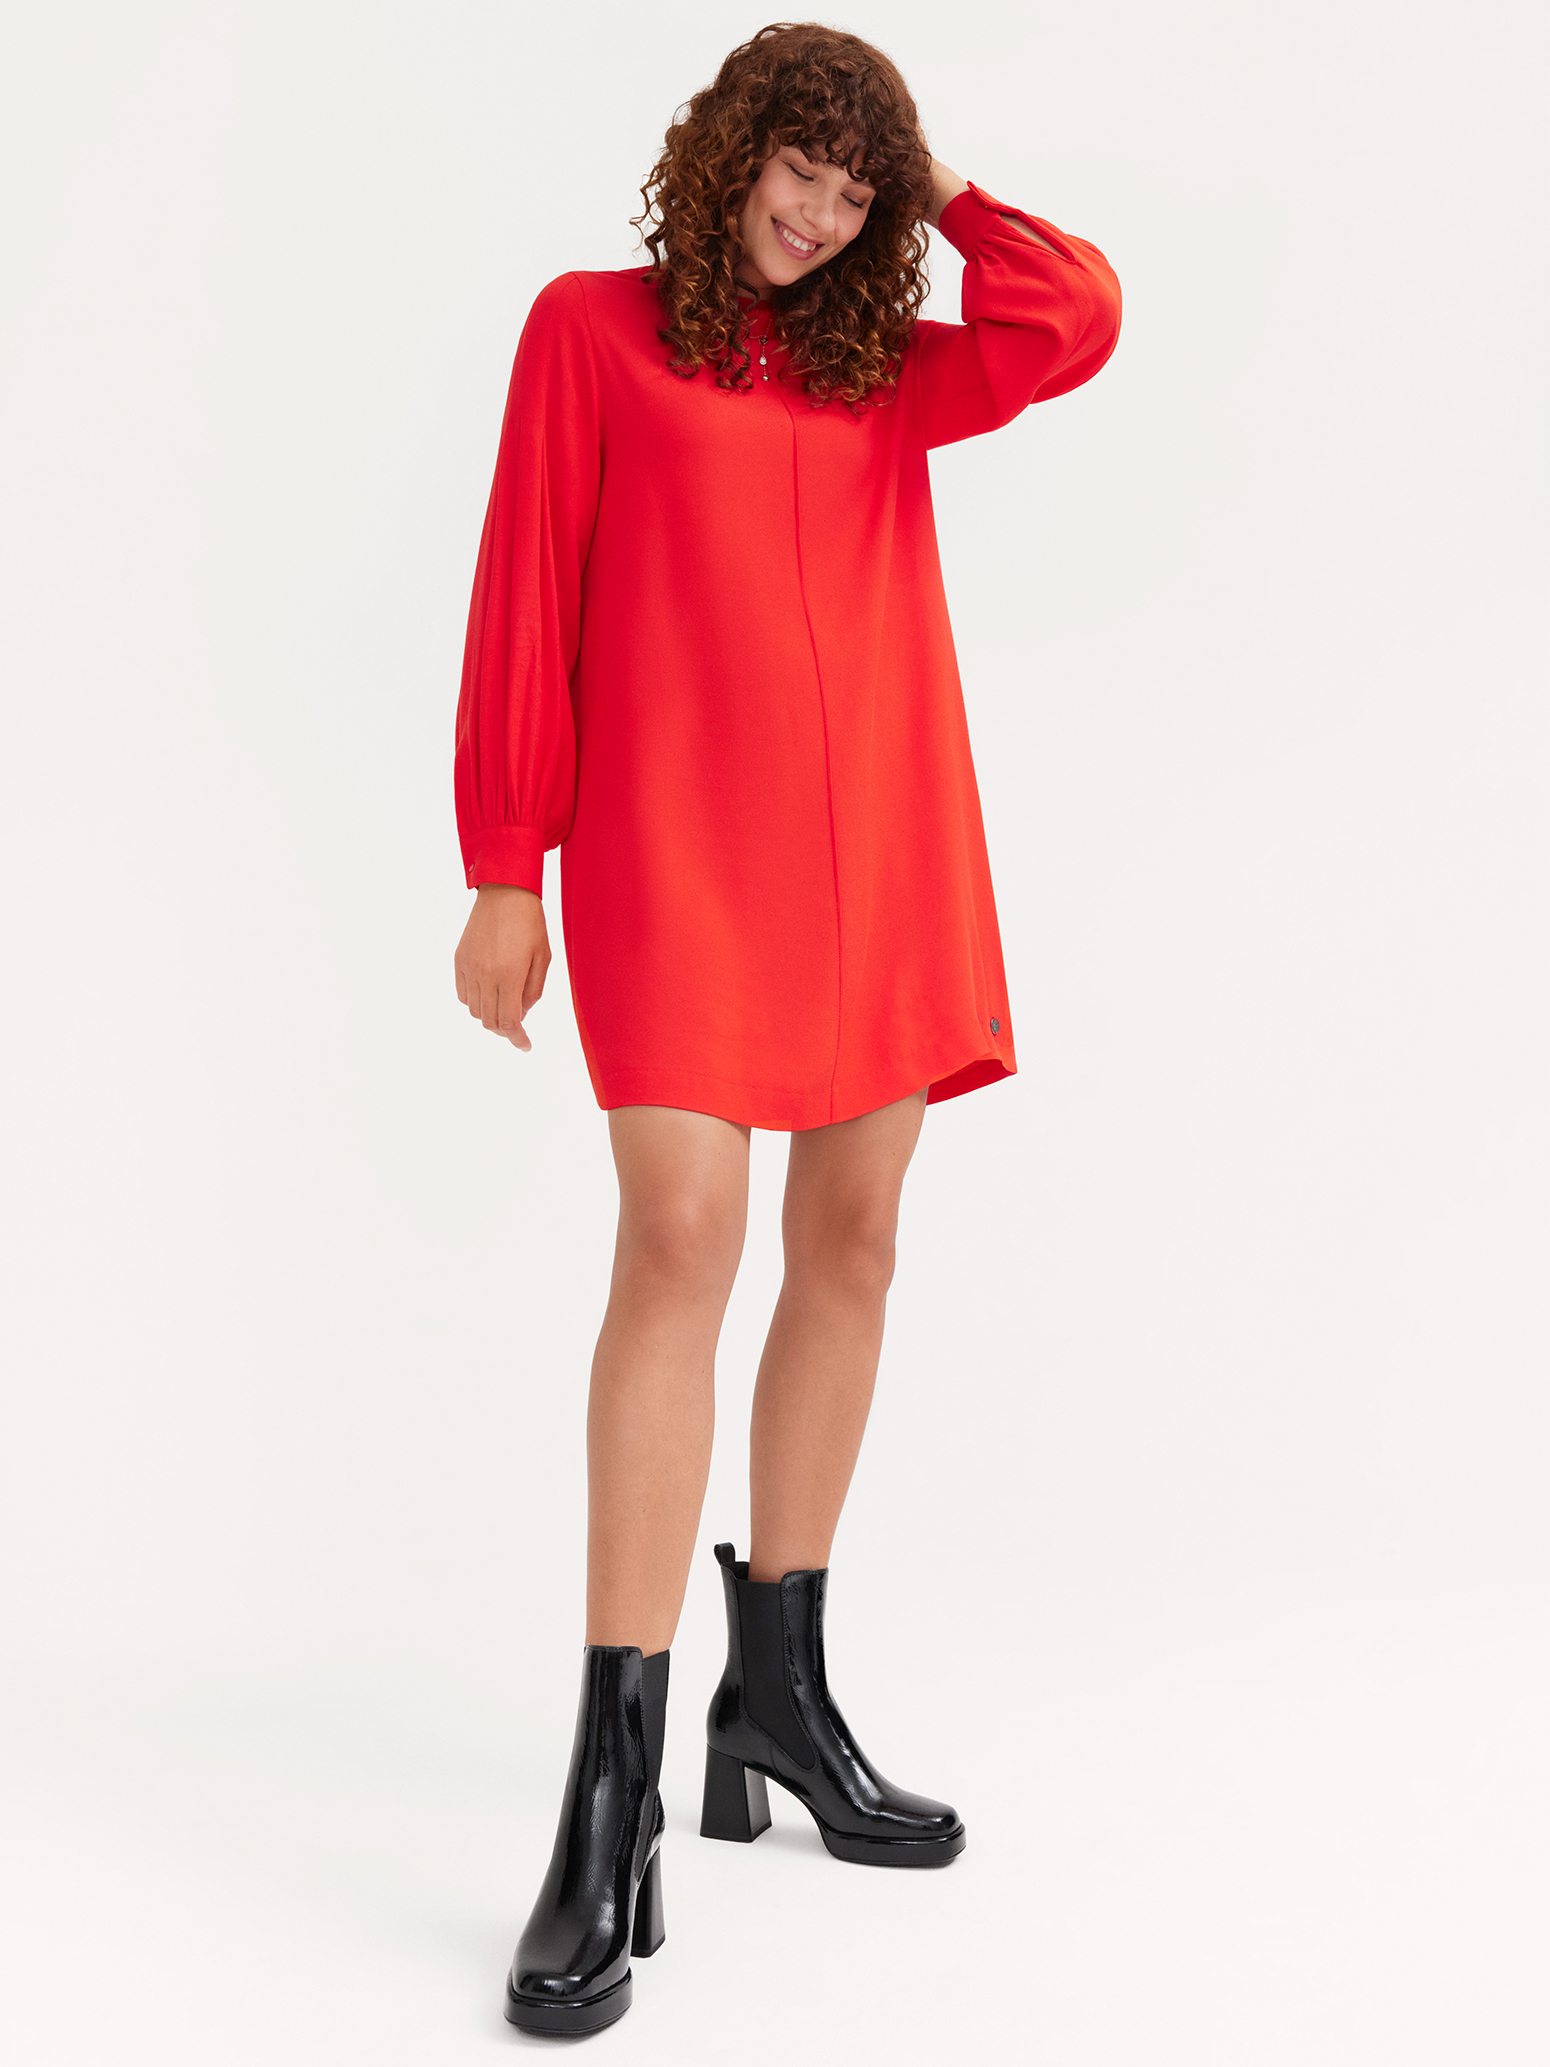 Kleid - rot TAW0356-30042: Tamaris kaufen! Kleider online